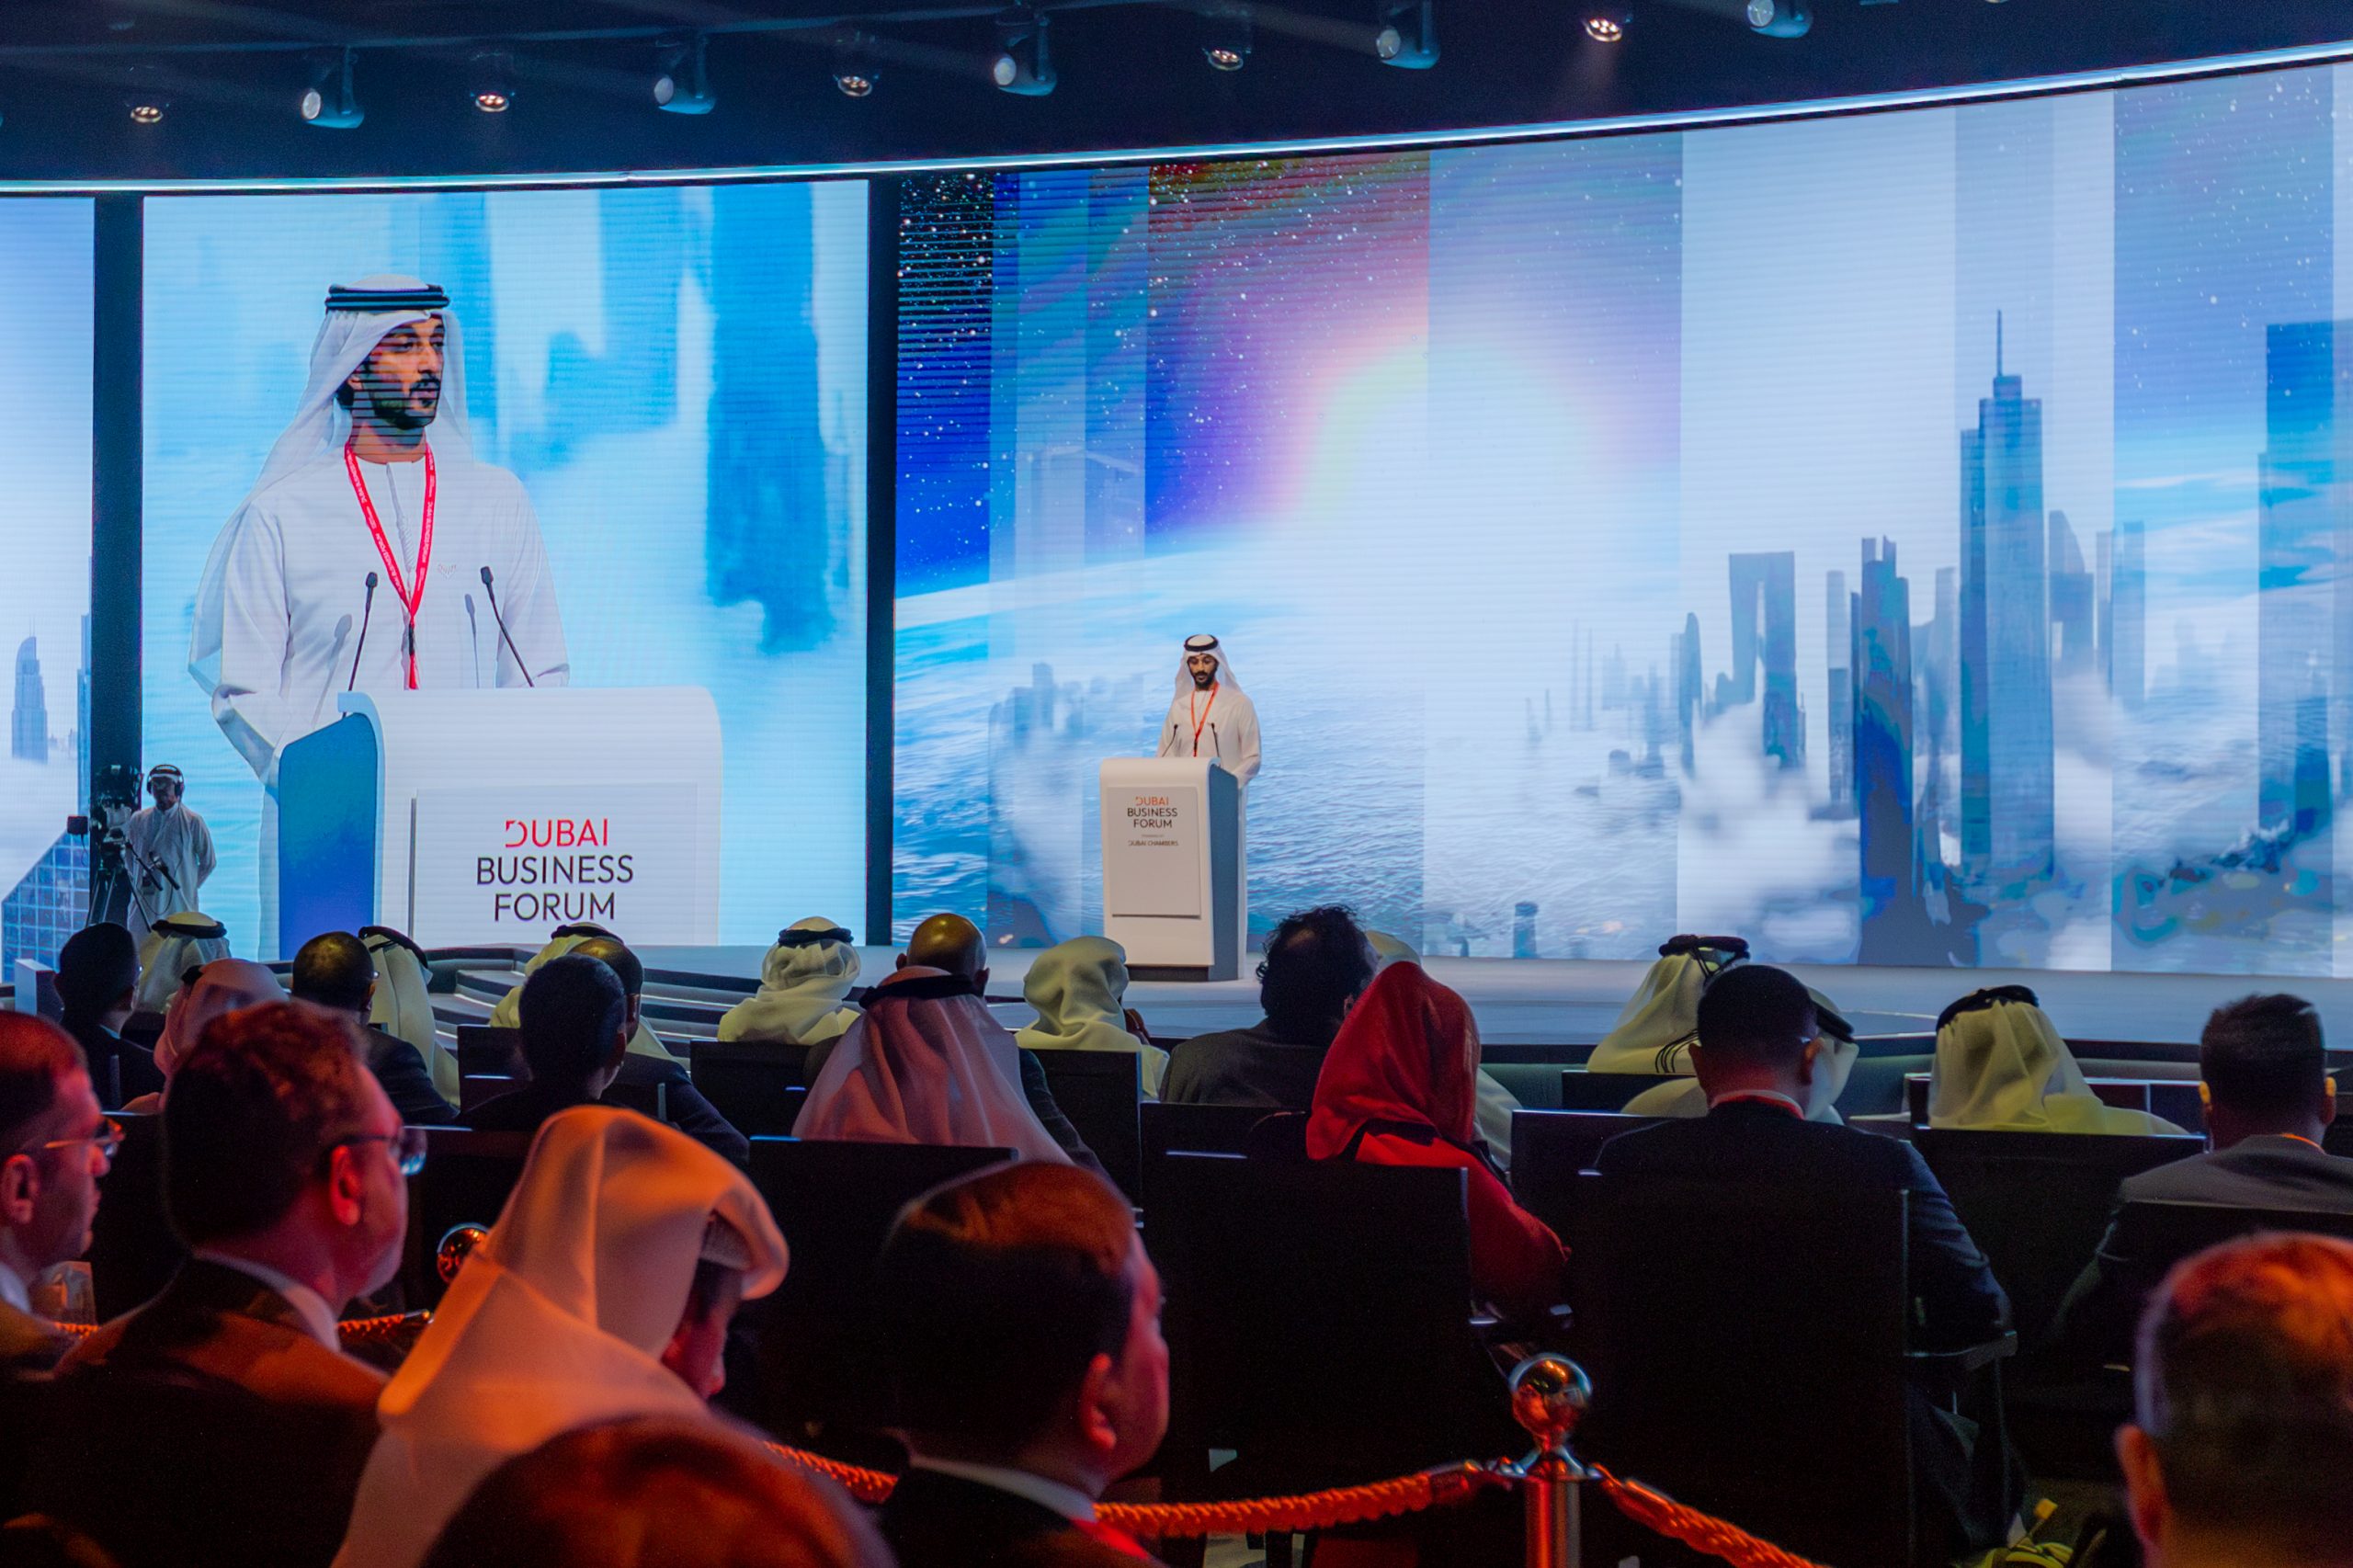 Dubai Business Forum speaker on stage